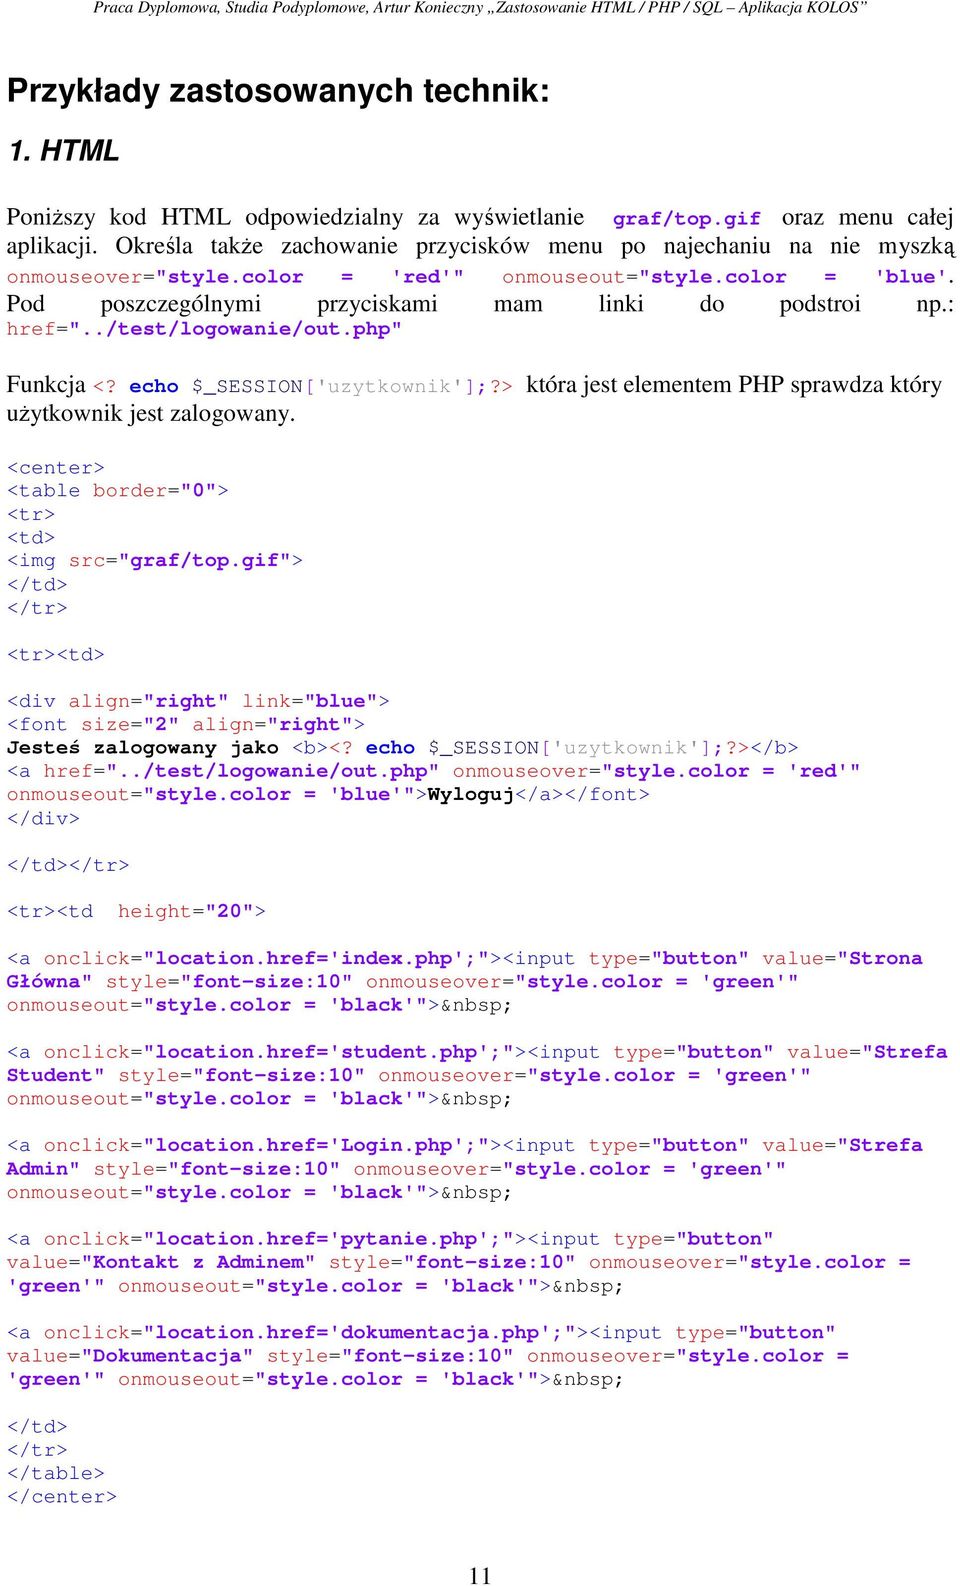 : href="../test/logowanie/out.php" Funkcja <? echo $_SESSION['uzytkownik'];?> która jest elementem PHP sprawdza który użytkownik jest zalogowany.